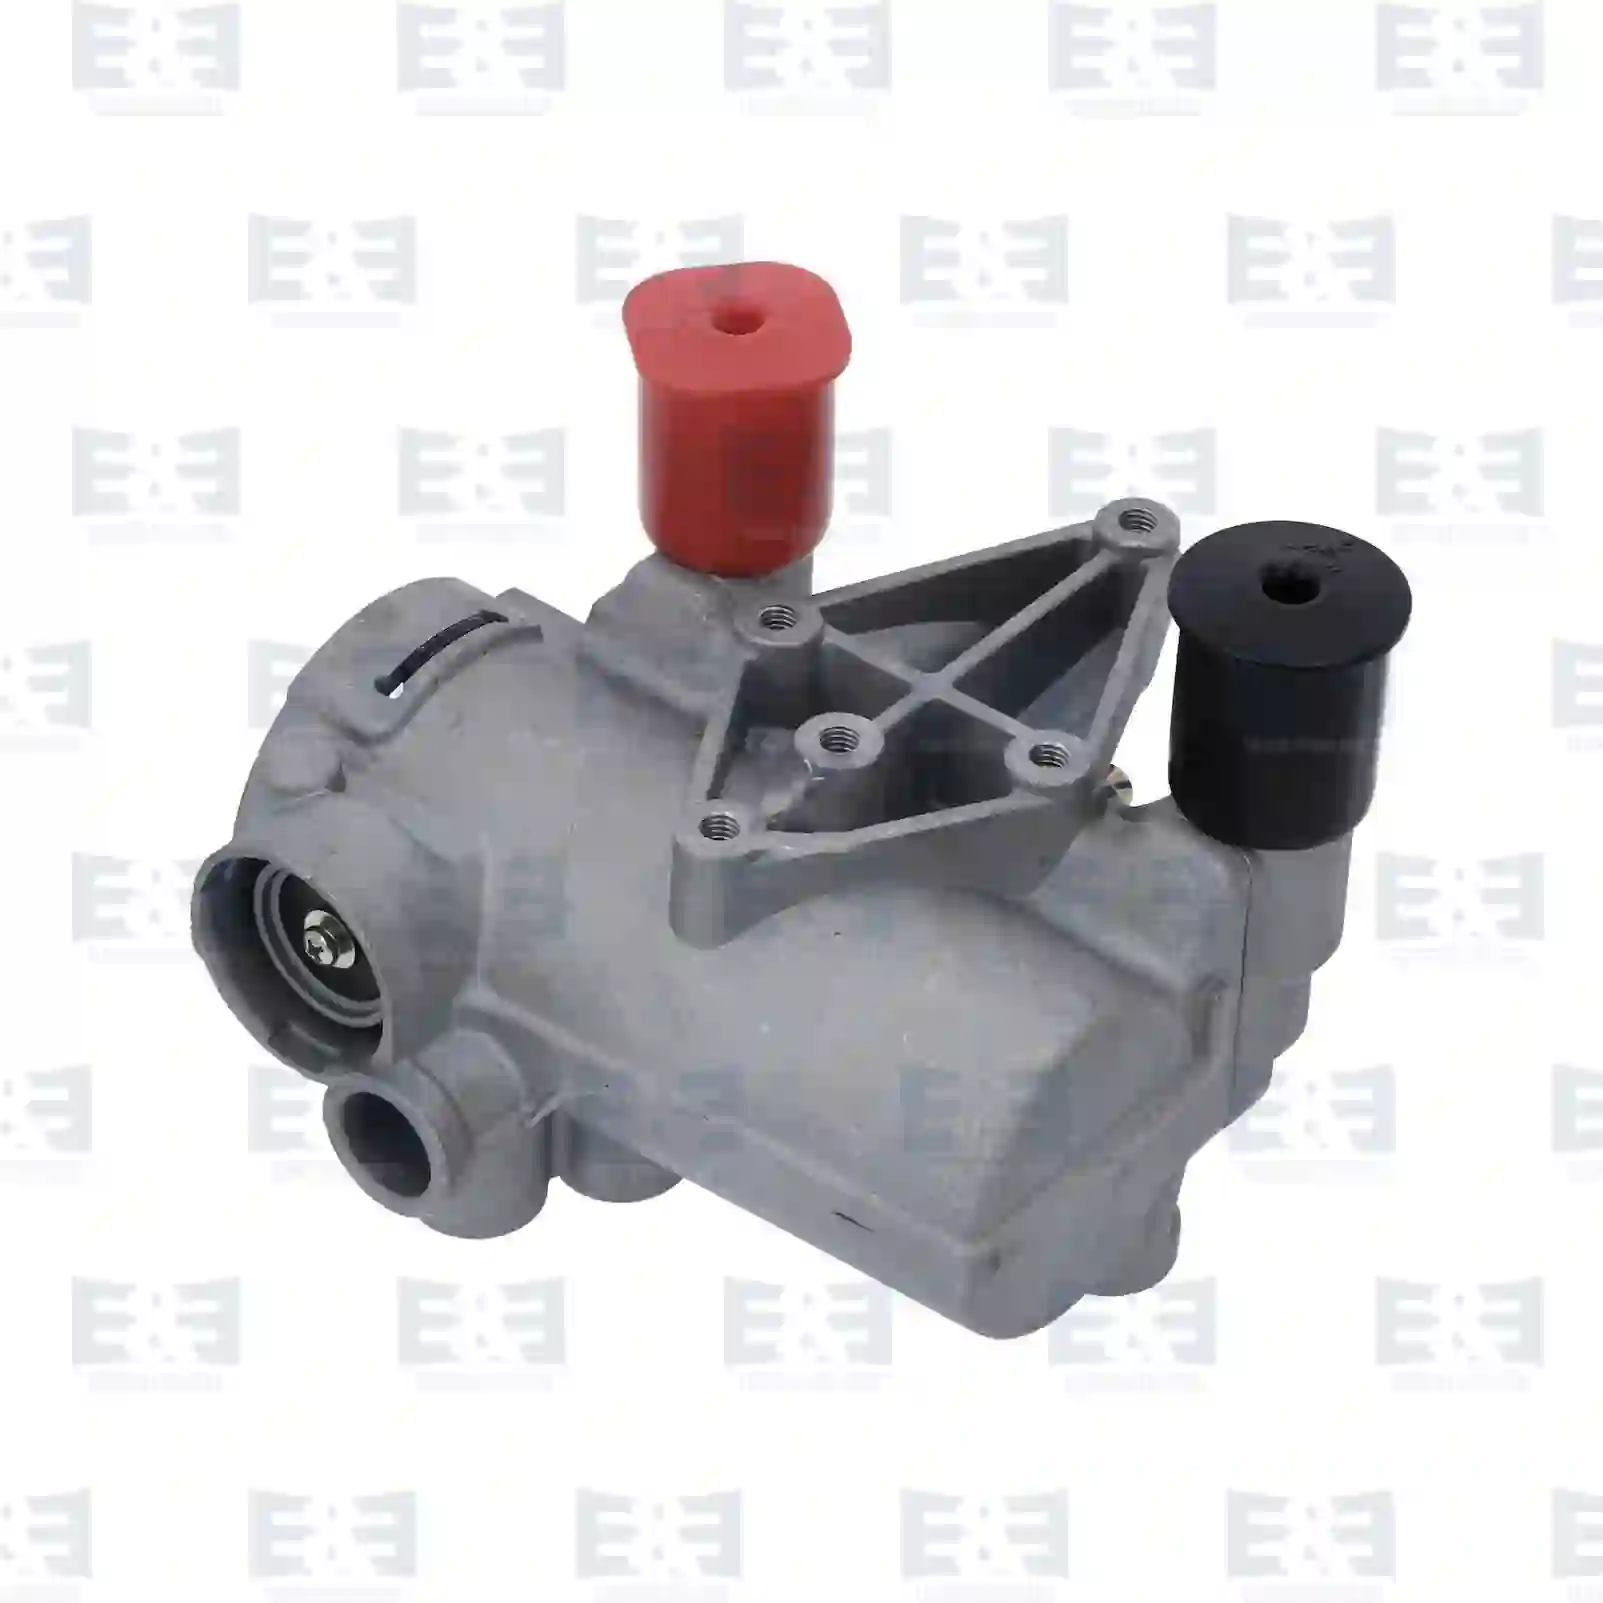  Quick release valve || E&E Truck Spare Parts | Truck Spare Parts, Auotomotive Spare Parts